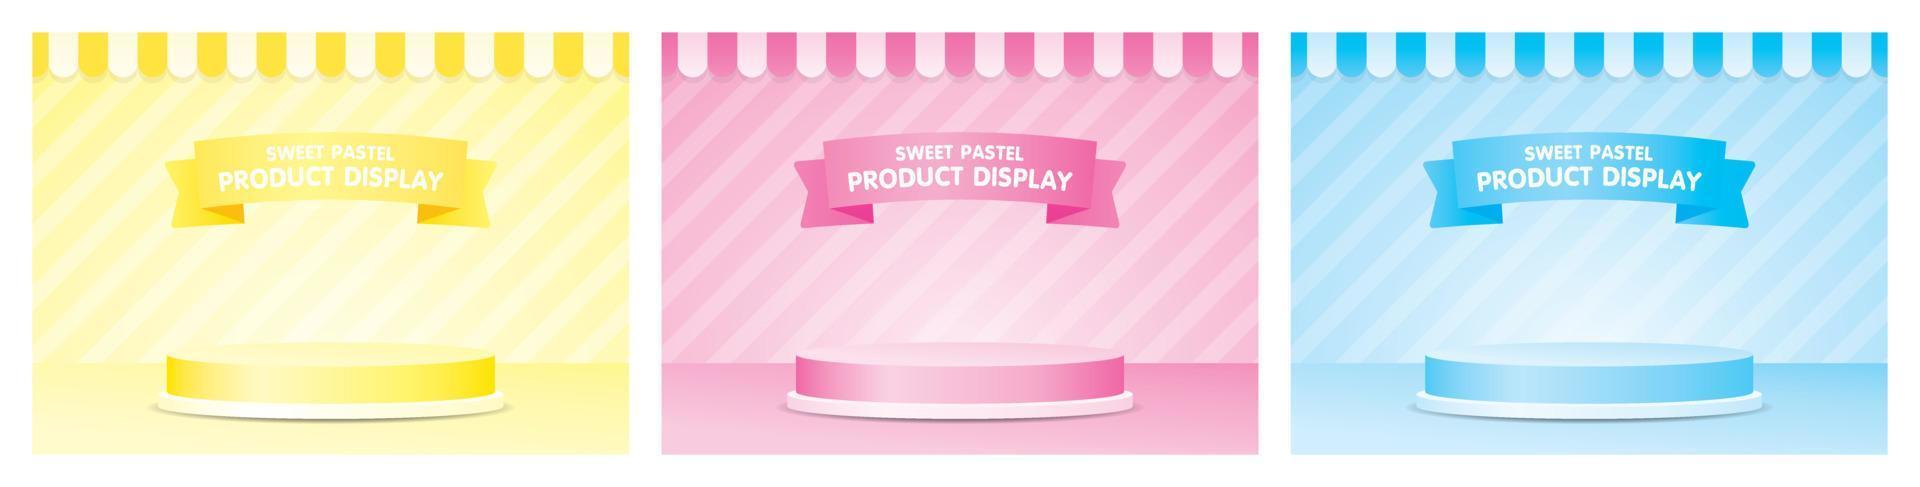 pódio de exibição de produto elegante bonito com toldo e vetor de ilustração 3d de parede listrada definido no tema de cor pastel feminino consiste em amarelo rosa e azul.